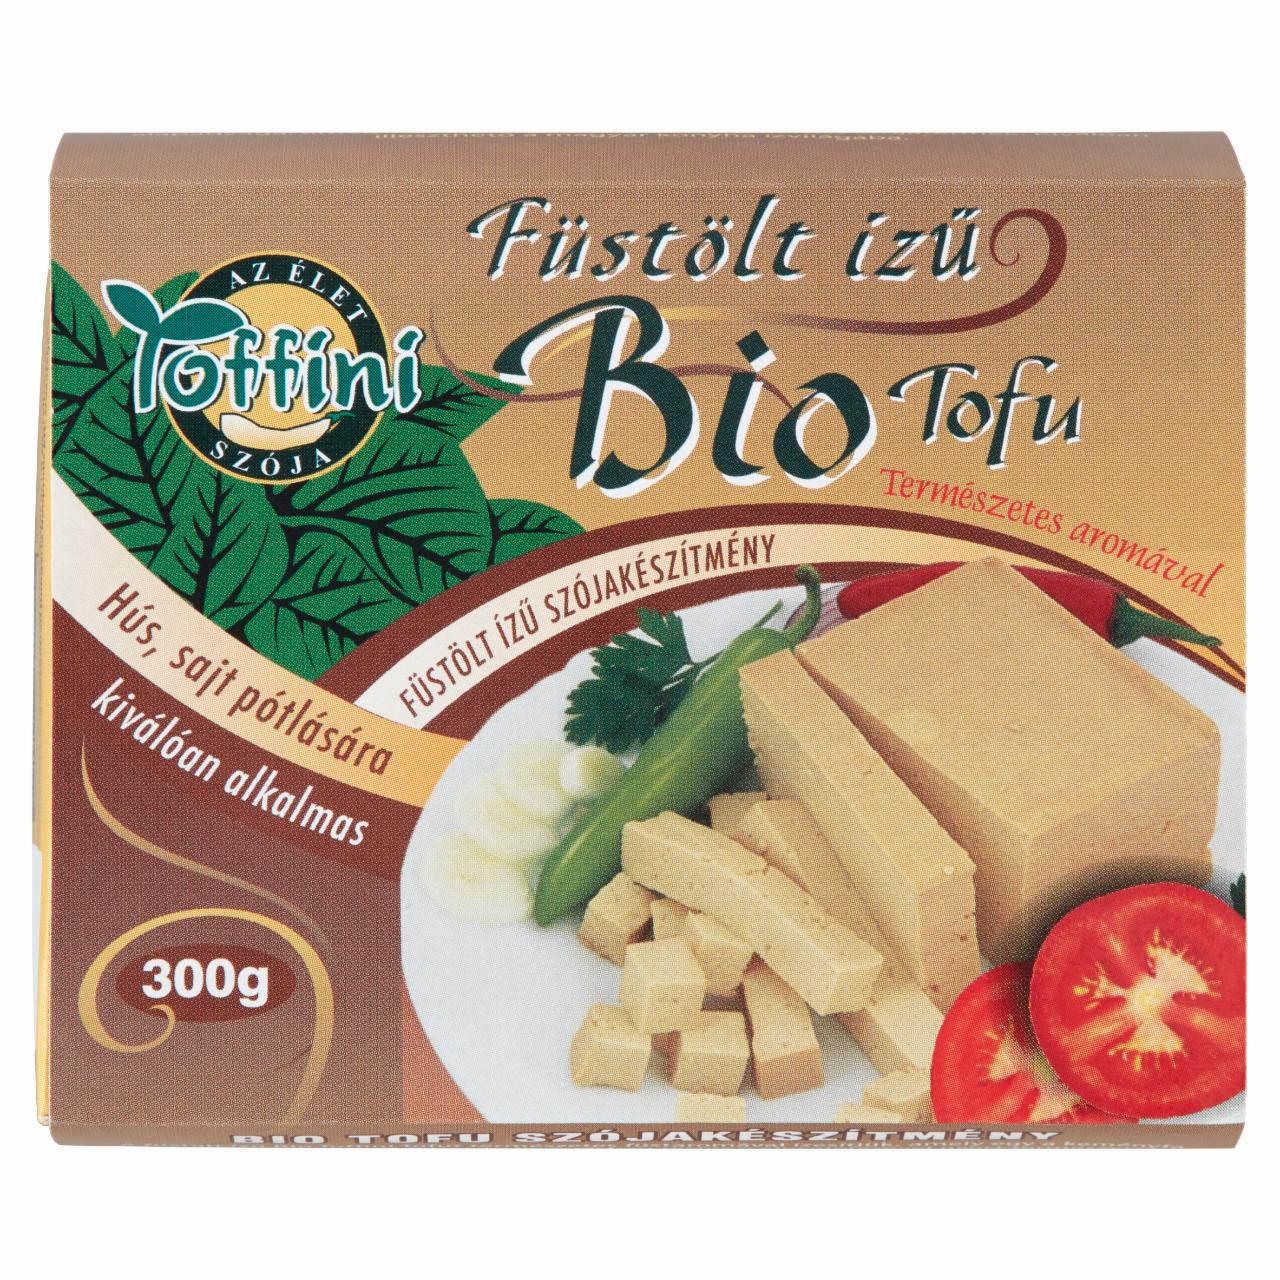 Képek - Toffini füstölt ízű BIO tofu 300 g